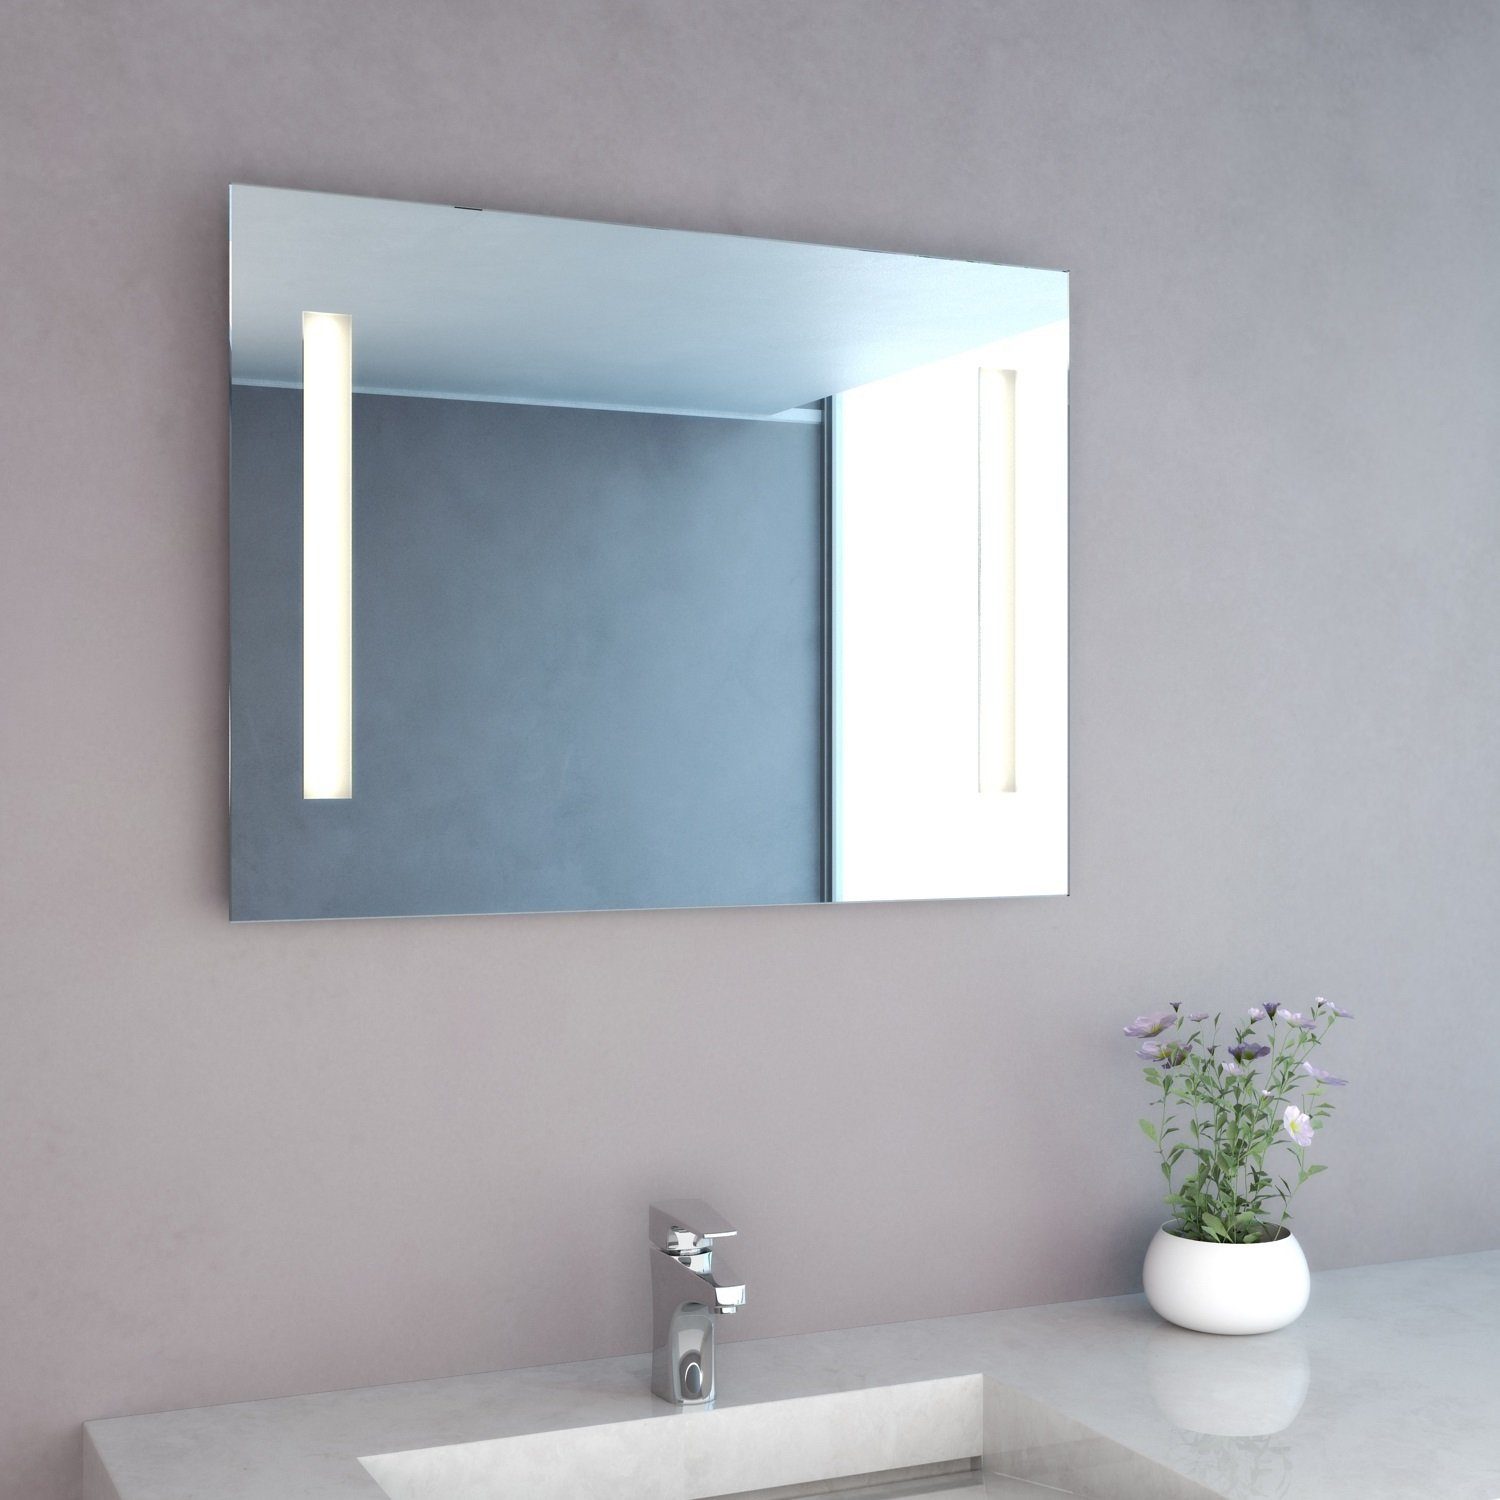 Bad-Spiegel mit energiesparender Badspiegel Mitra NEG NEG LED-Bel